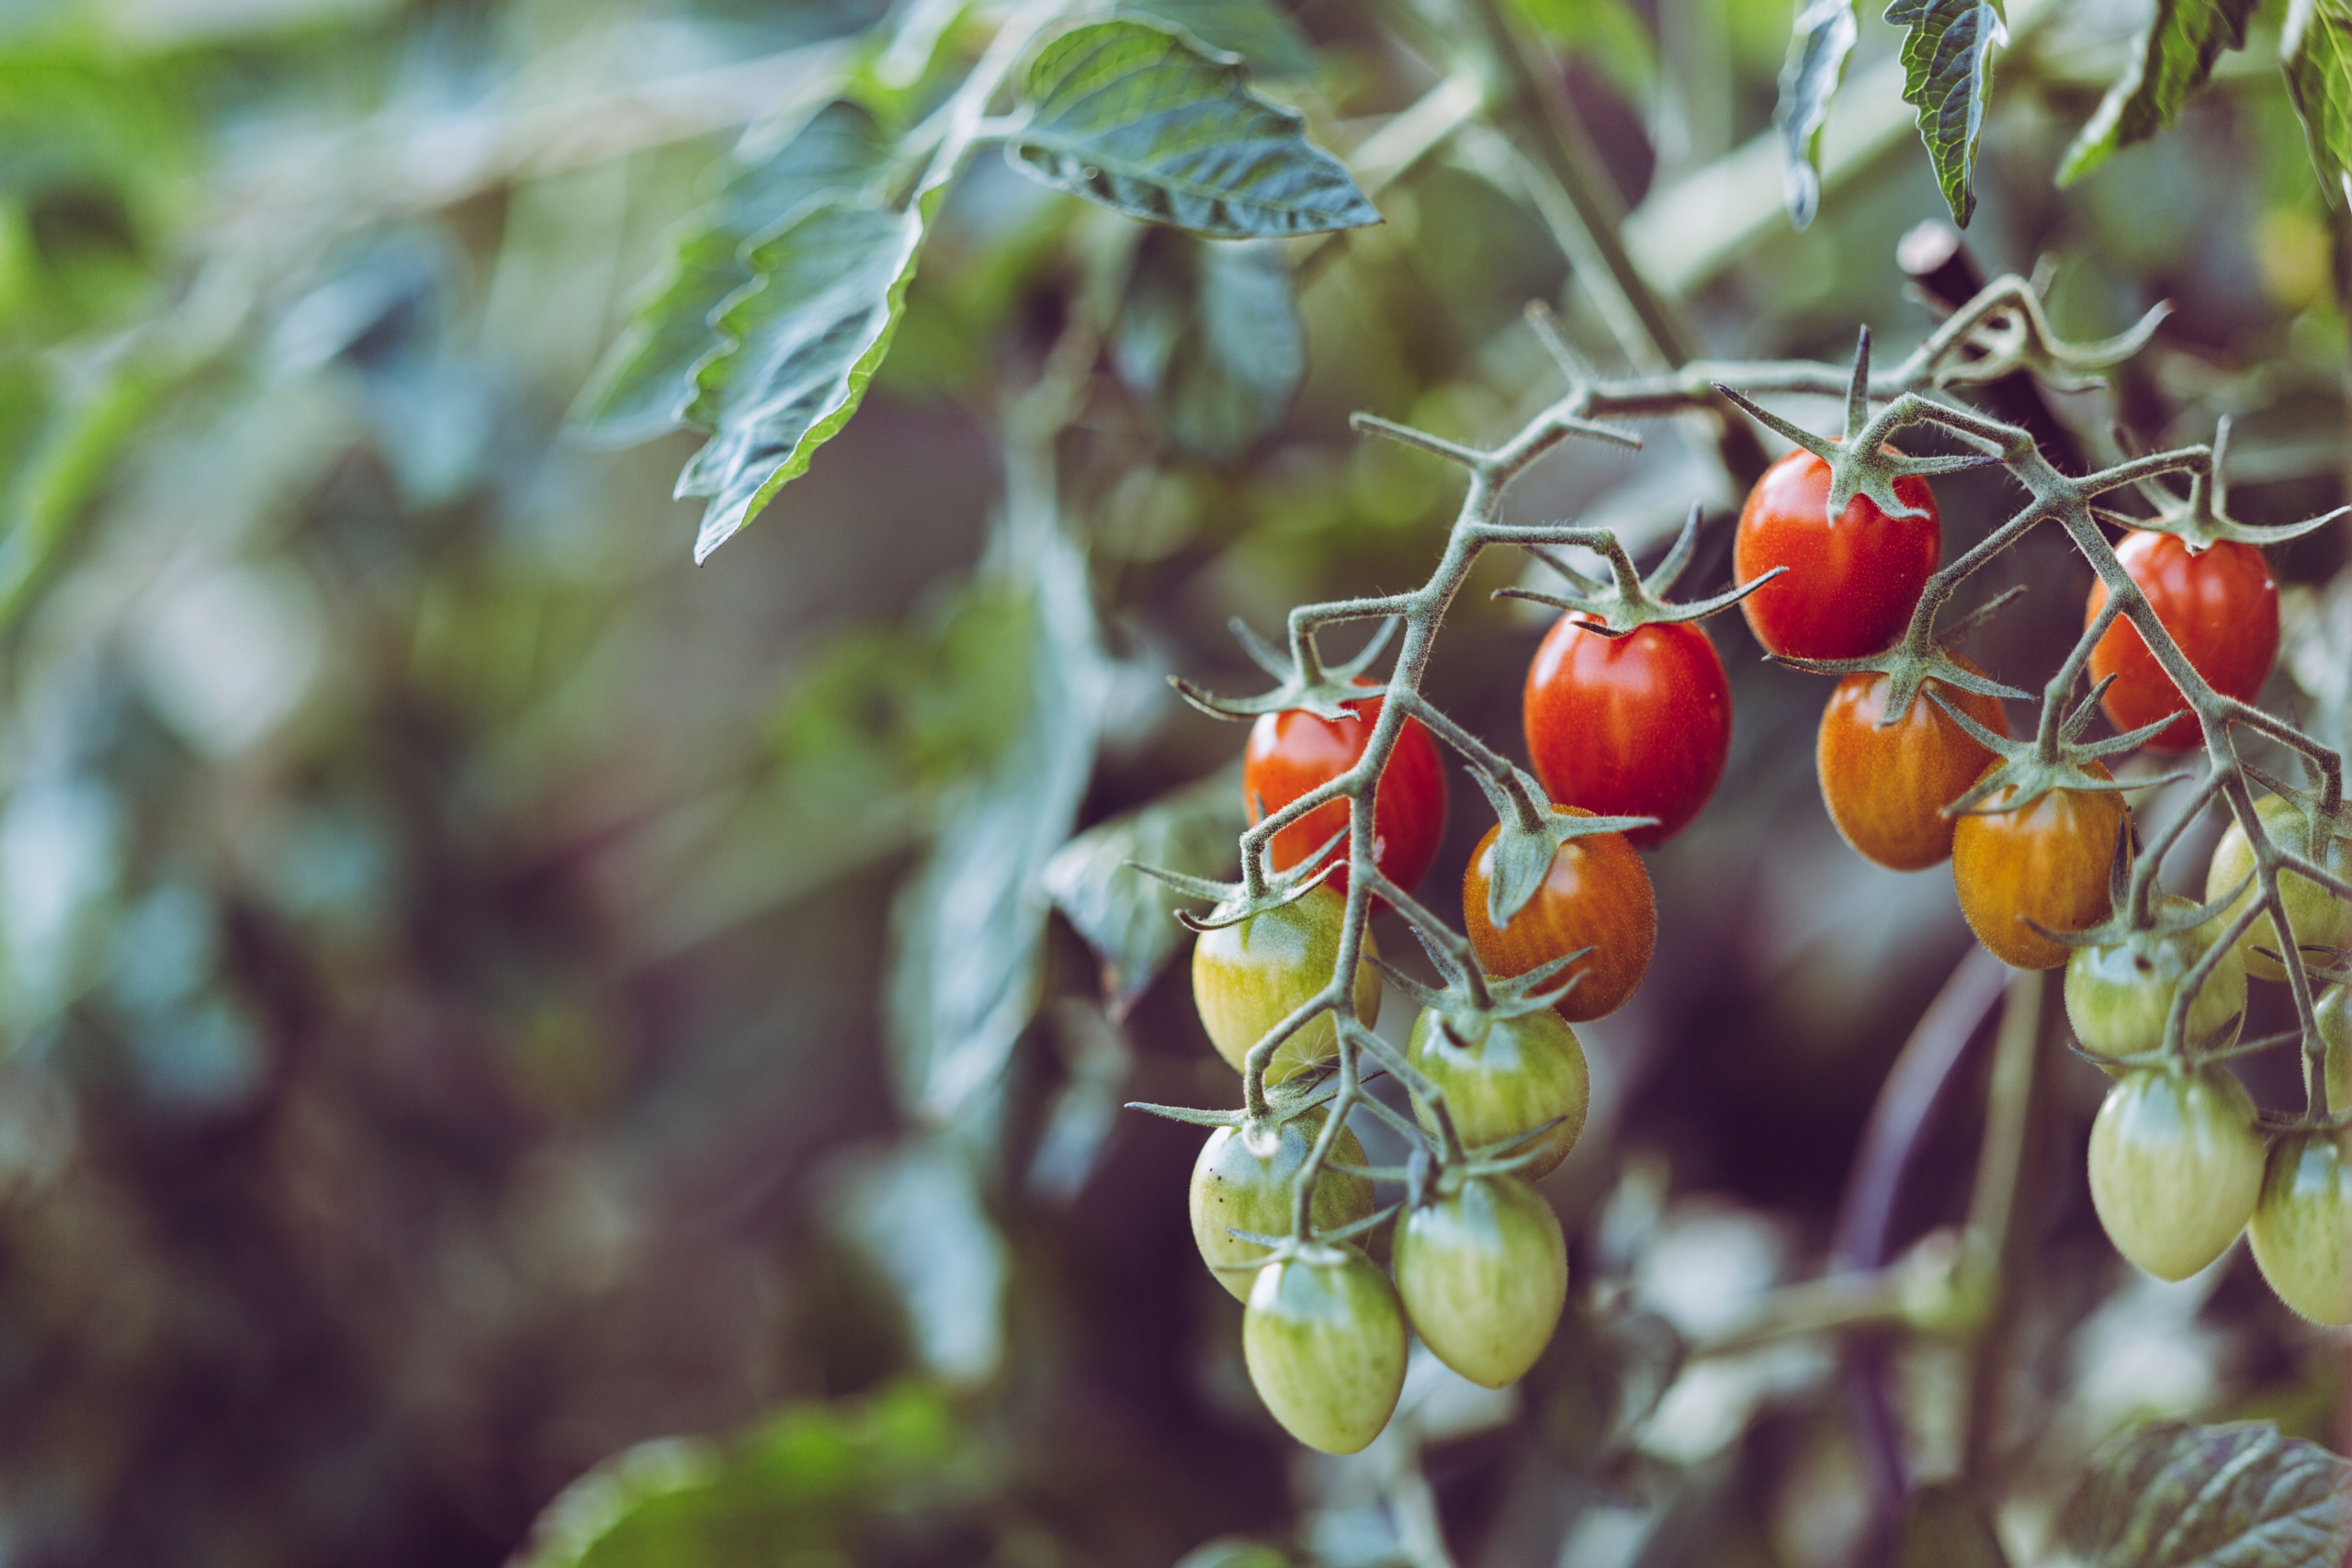 Tomater är världens mest bearbetade grönsak. Cirka 39 miljoner ton tomater bearbetas årligen runt om i världen. Bearbetade tomater används ofta i en rad lätt igenkännliga produkter, som pizza, ketchup och pastasås.